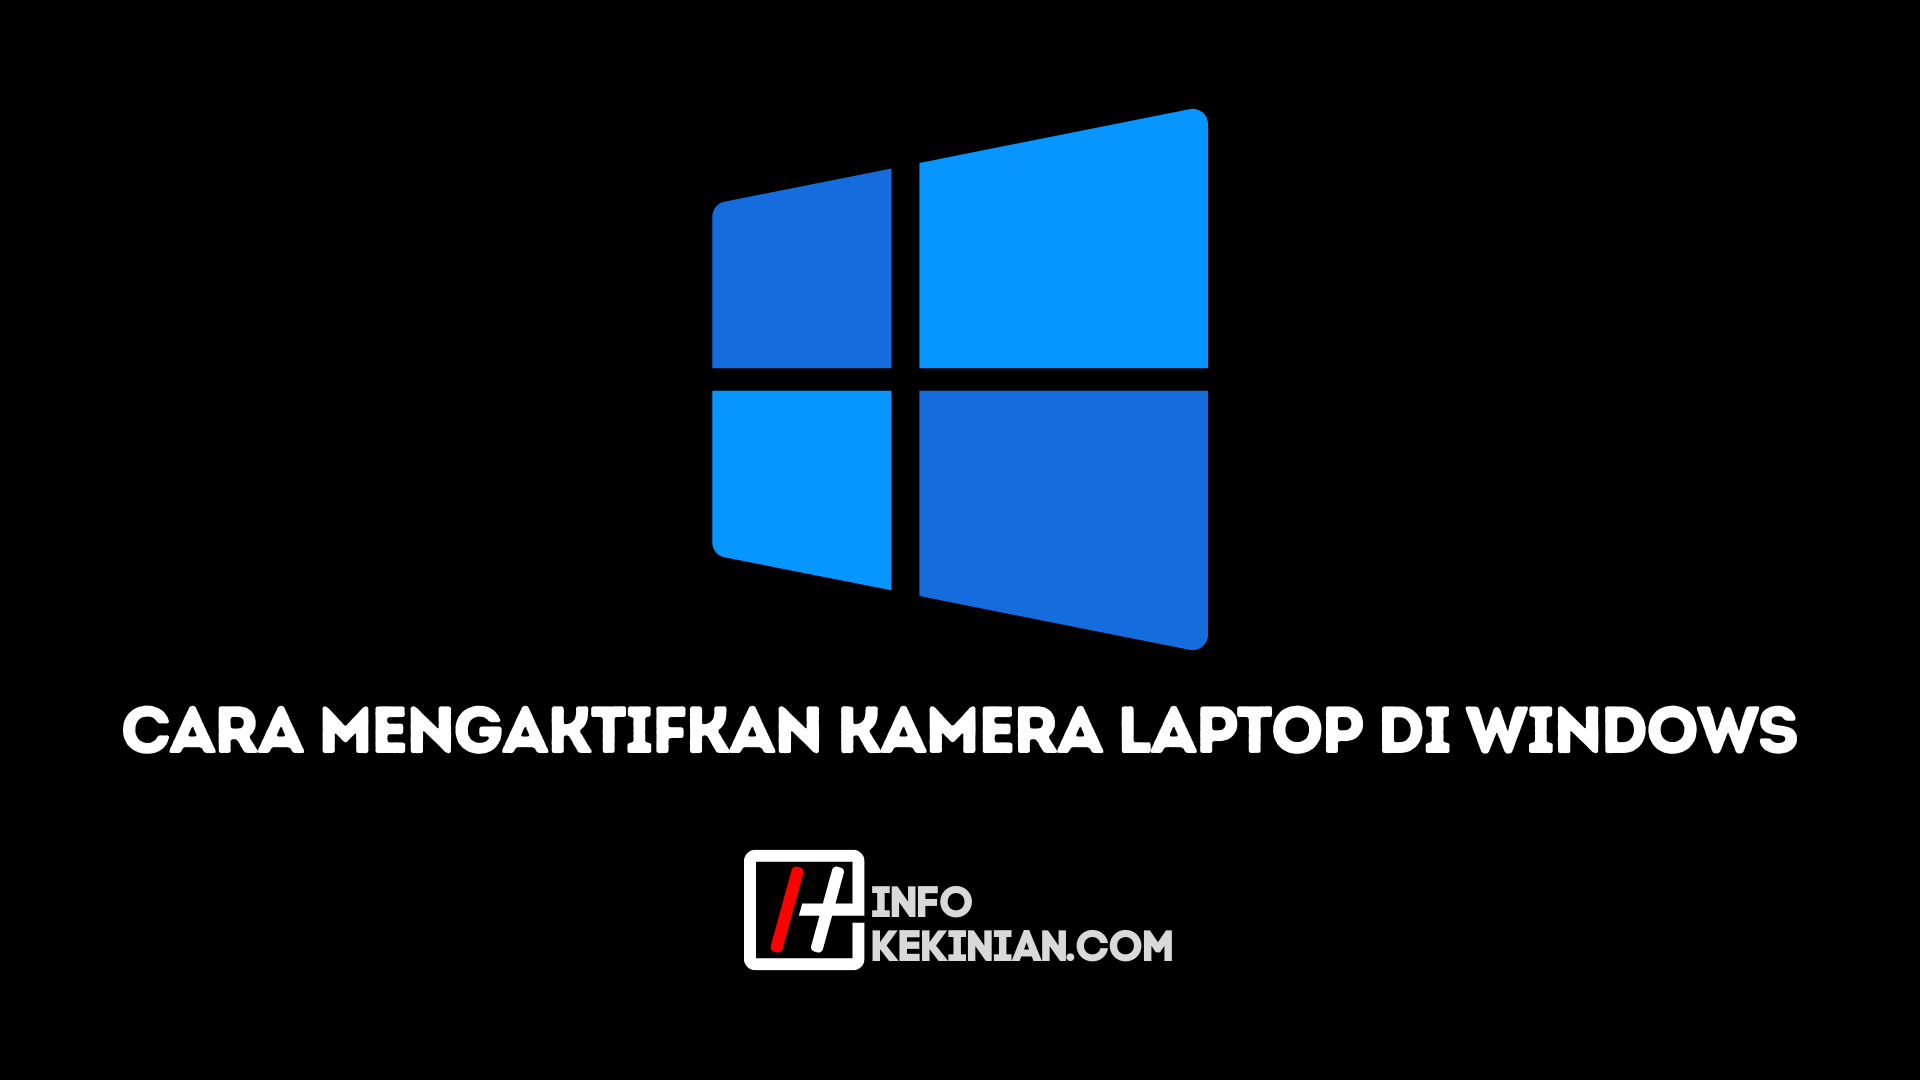 1. Windows 10